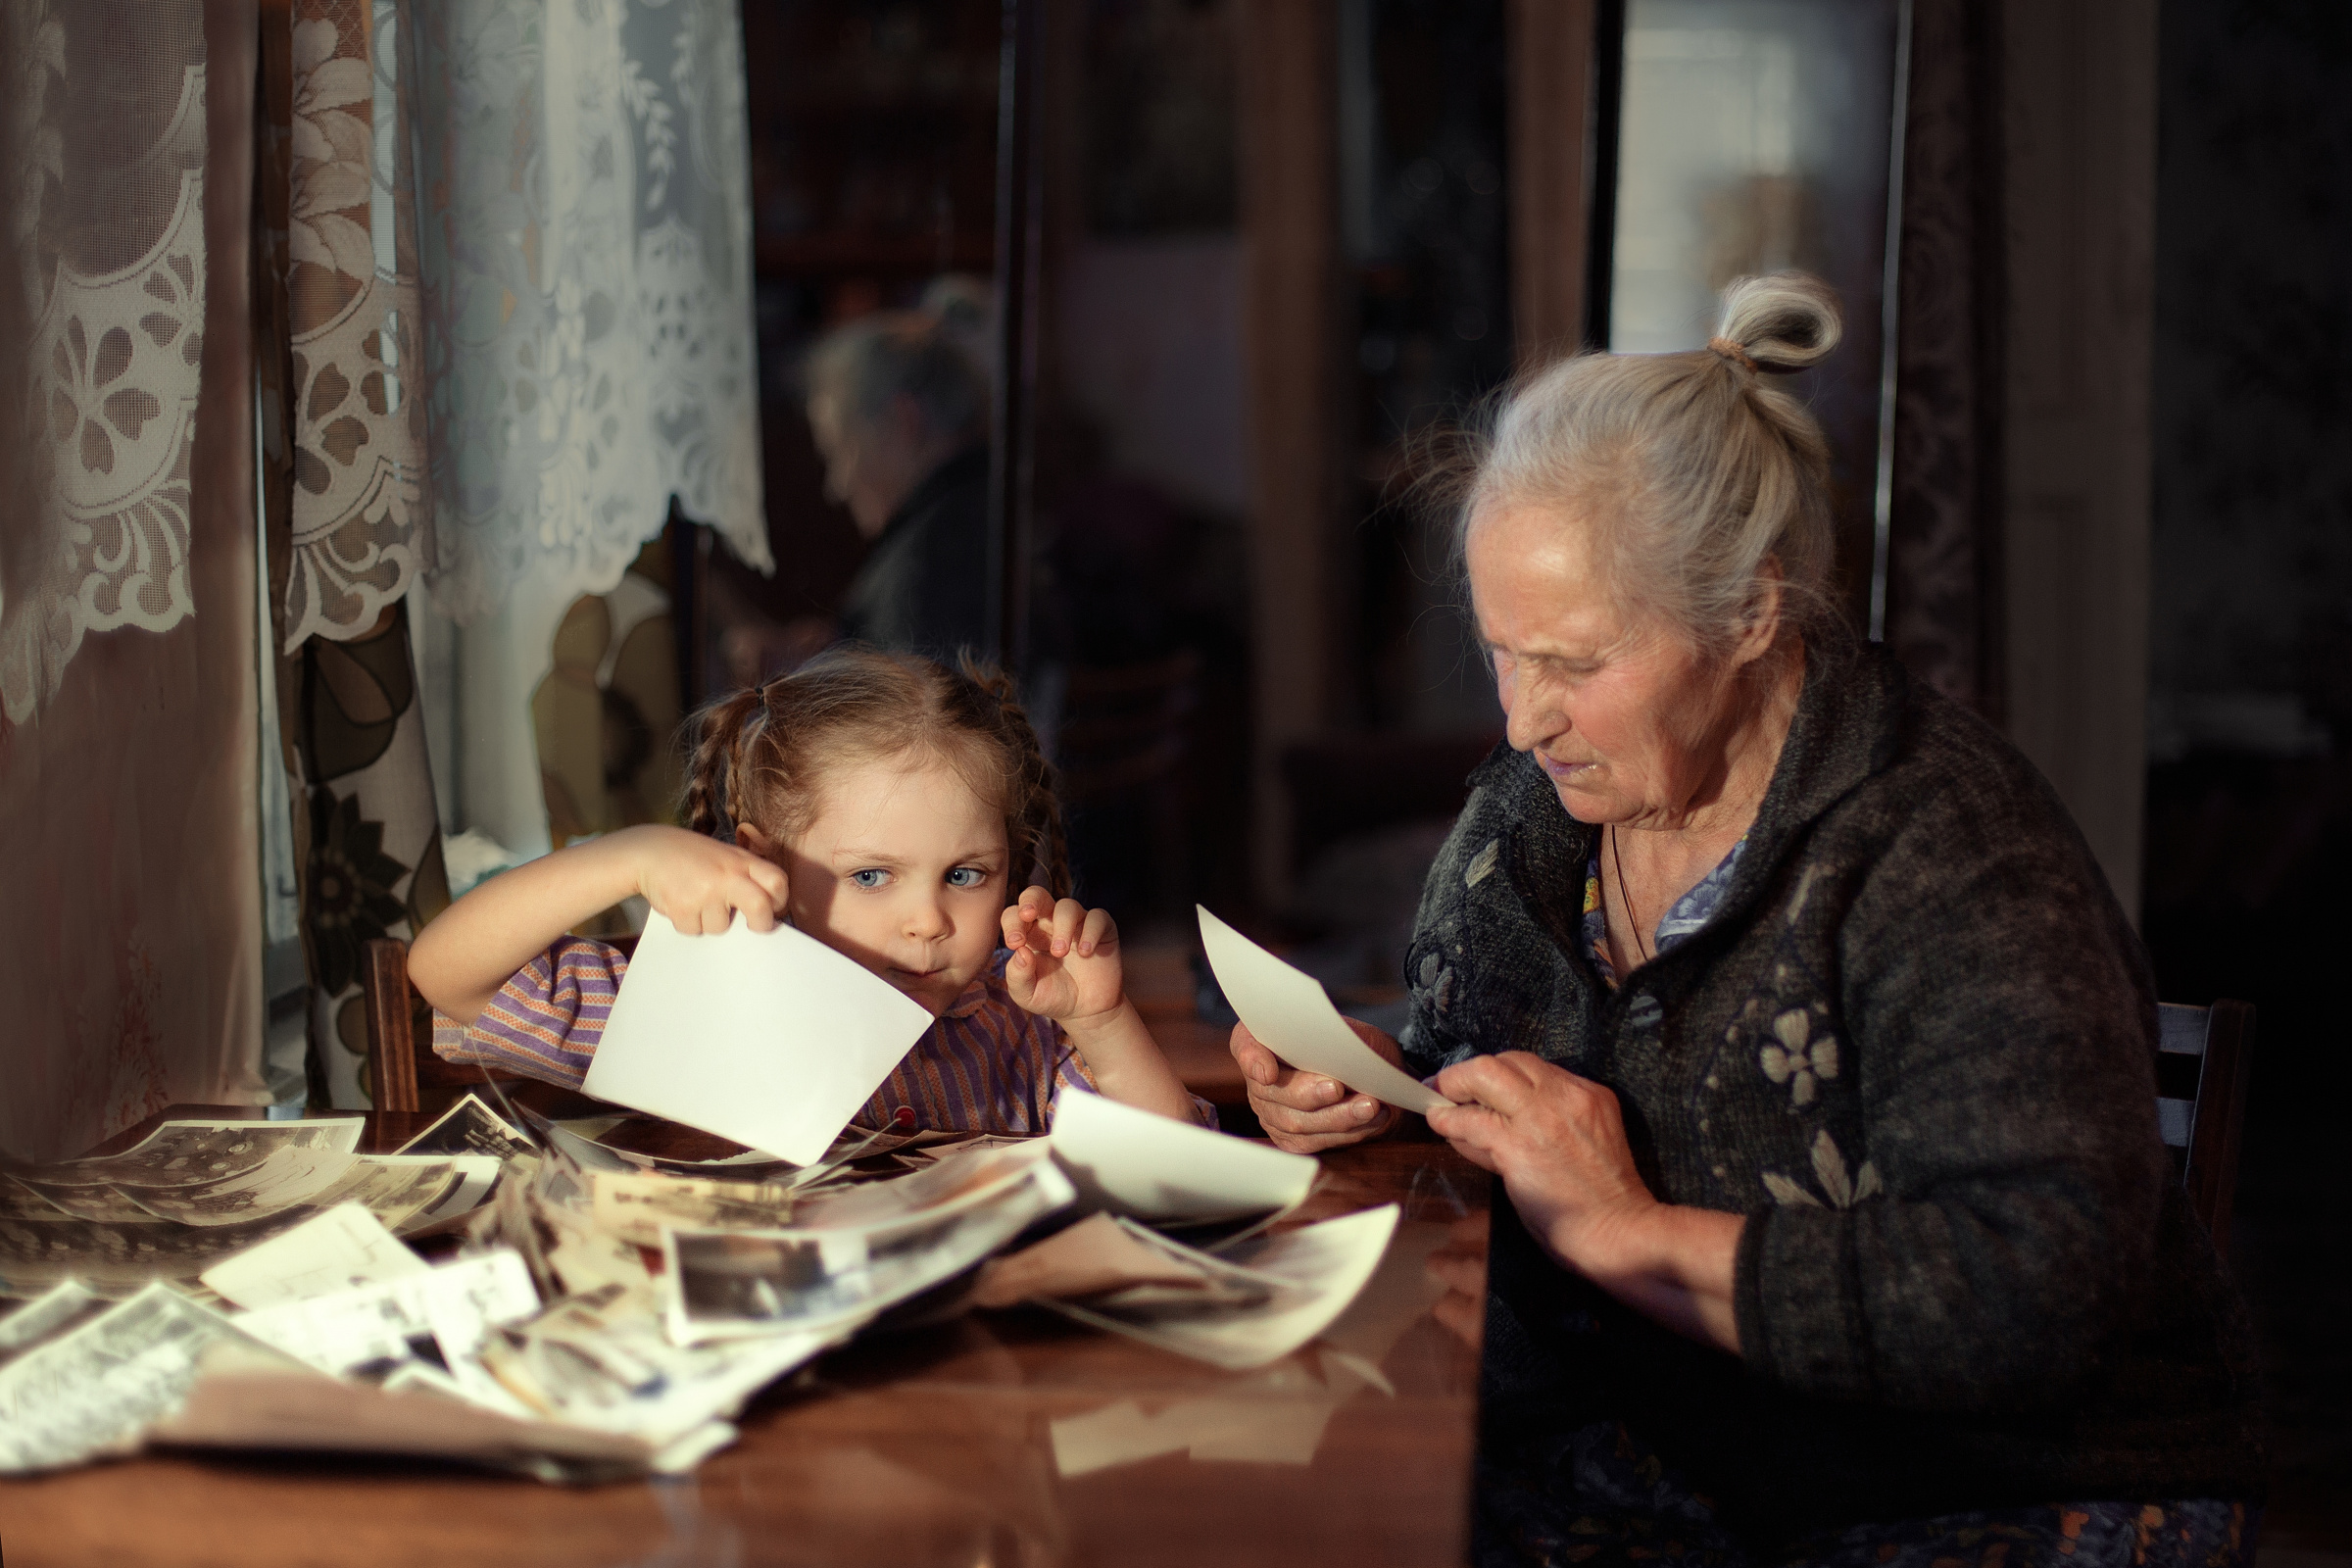 Самое главное в семейной фотографии, по мнению автора, — преемственность поколений. Фото: Юлия Белякова